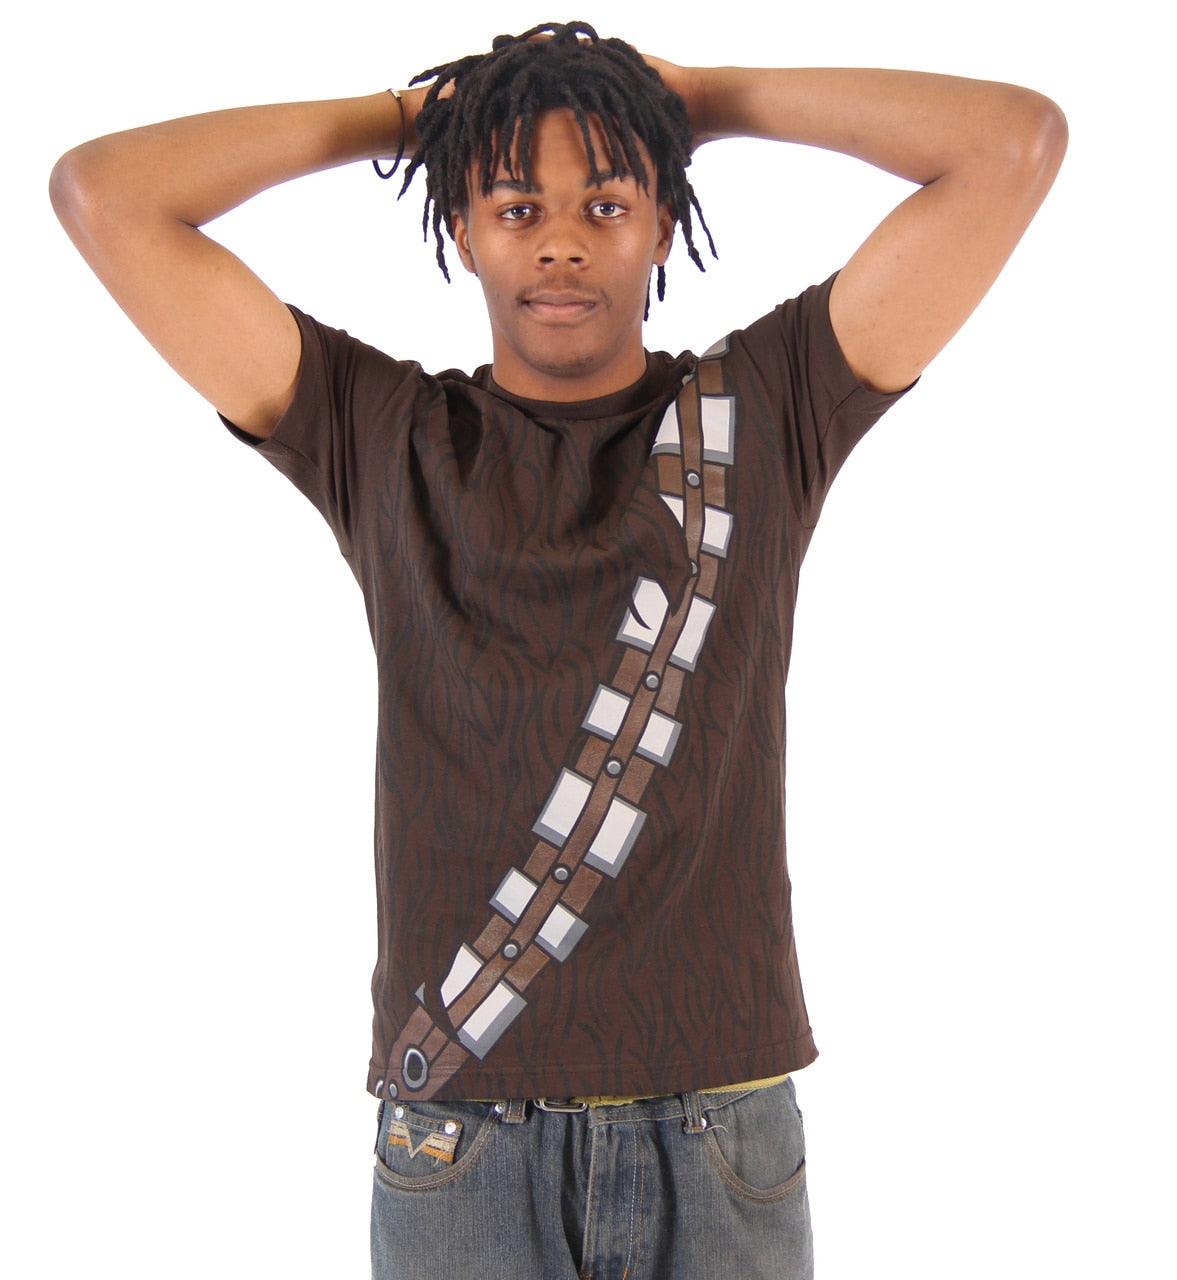 Star Wars I am Chewbacca Costume T-Shirt-tvso